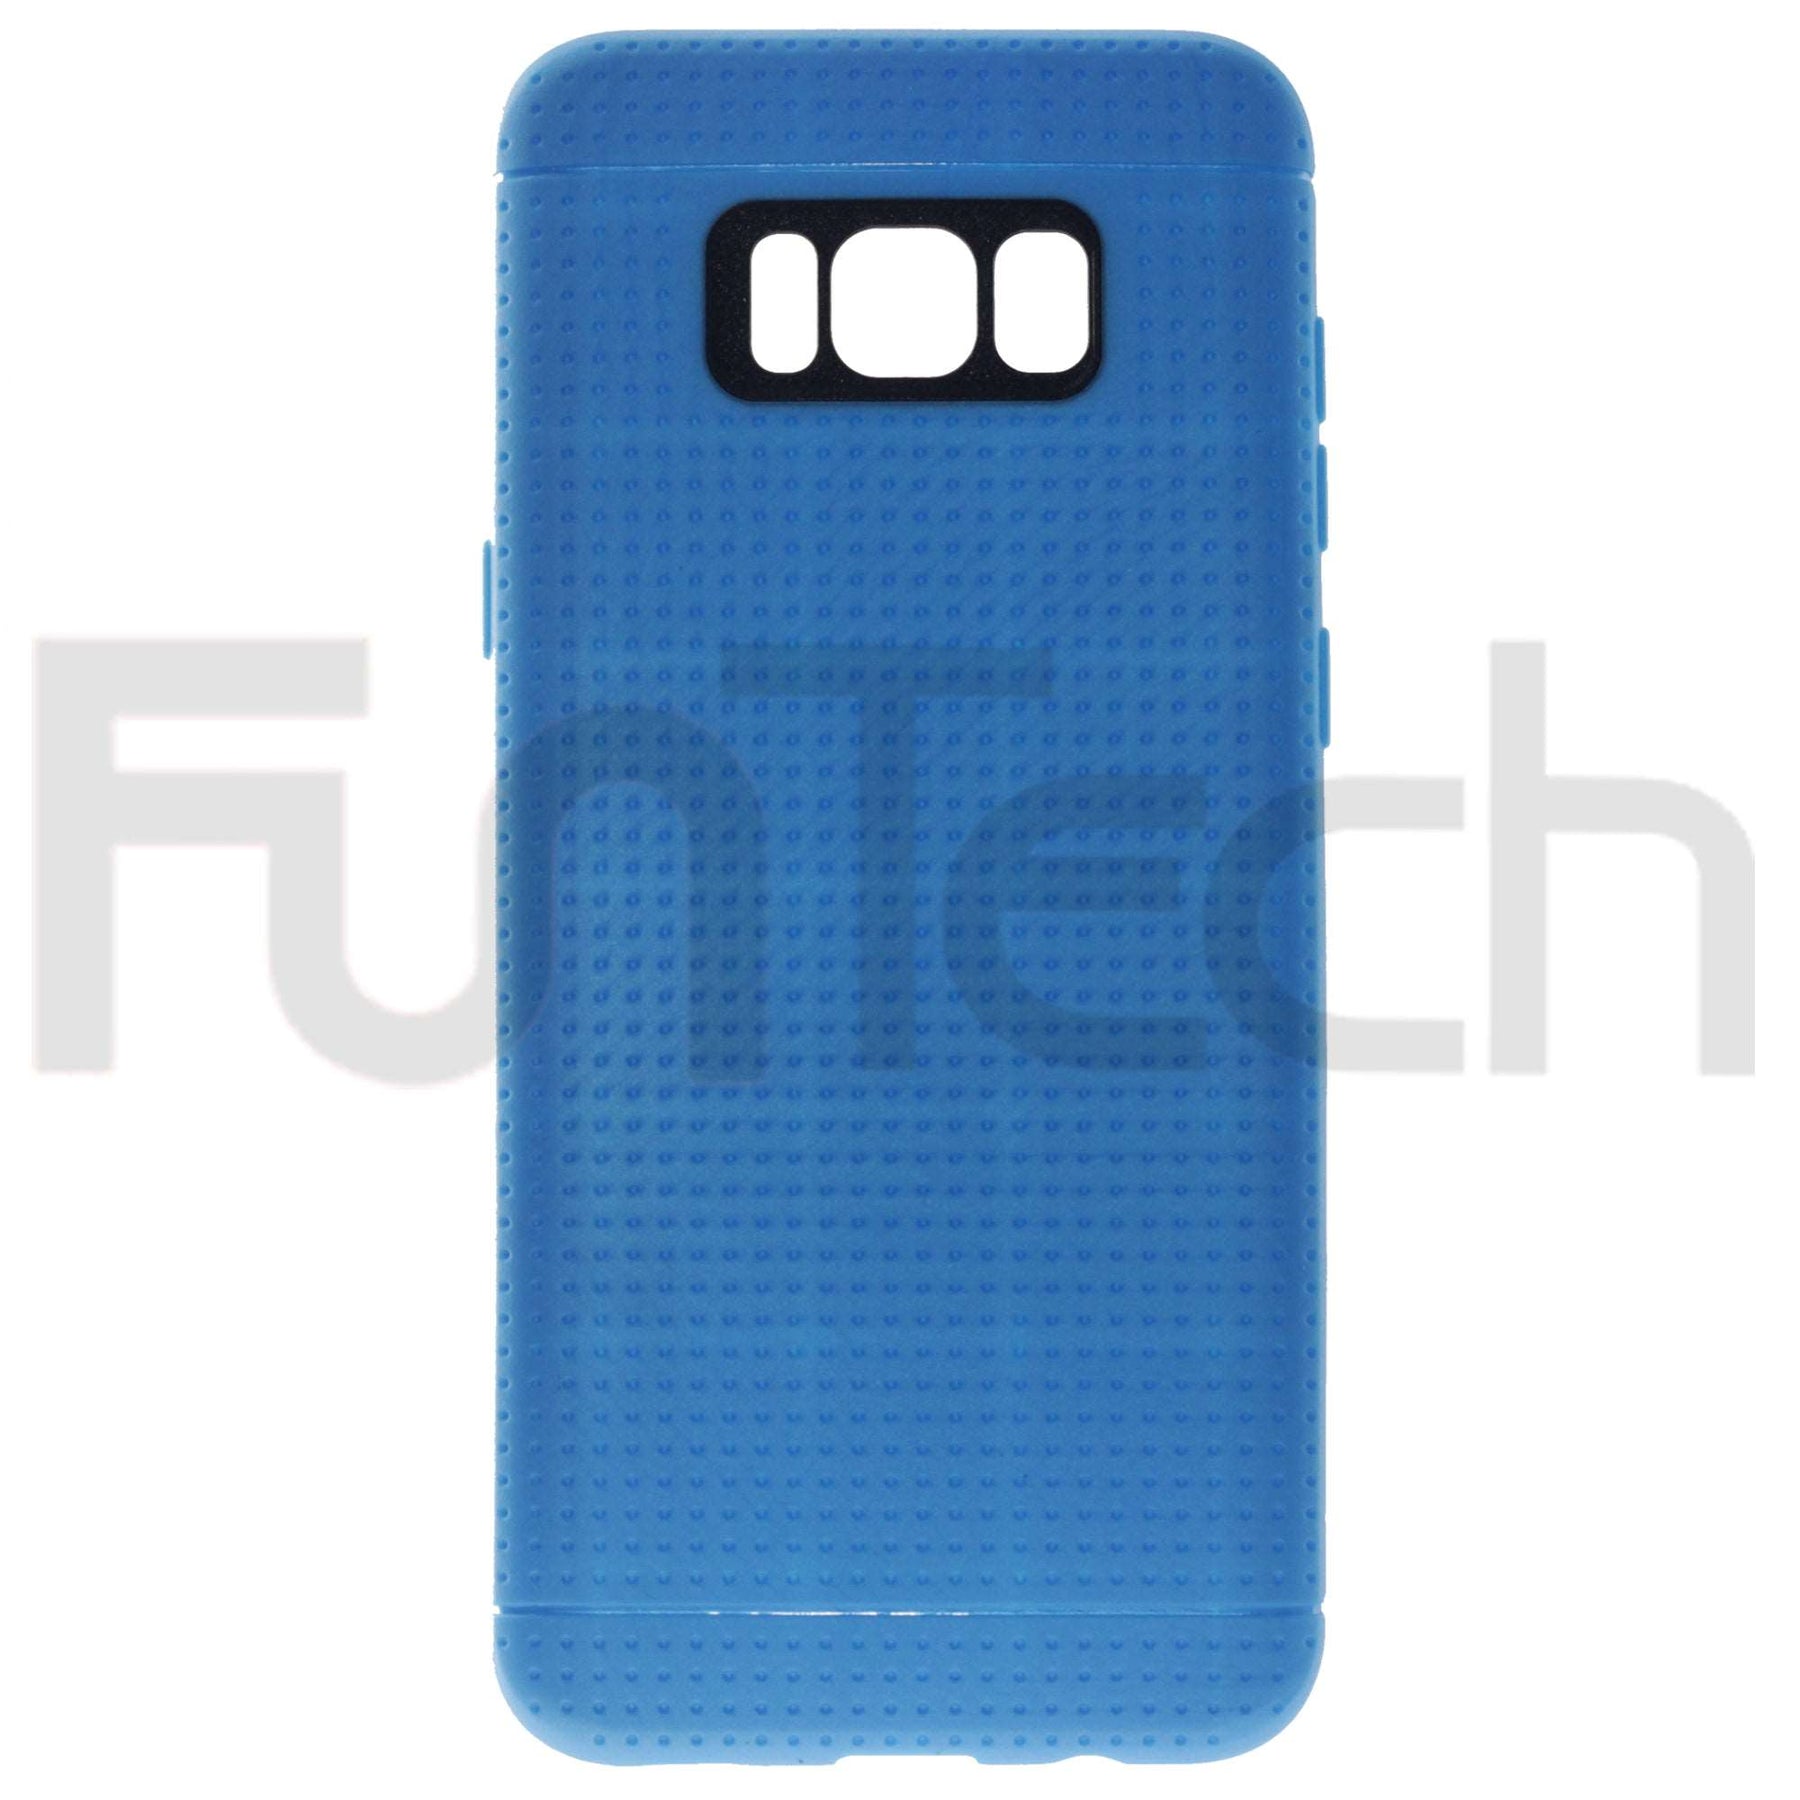 Samsung S8+, Grid Gel Back Case, Color Blue.